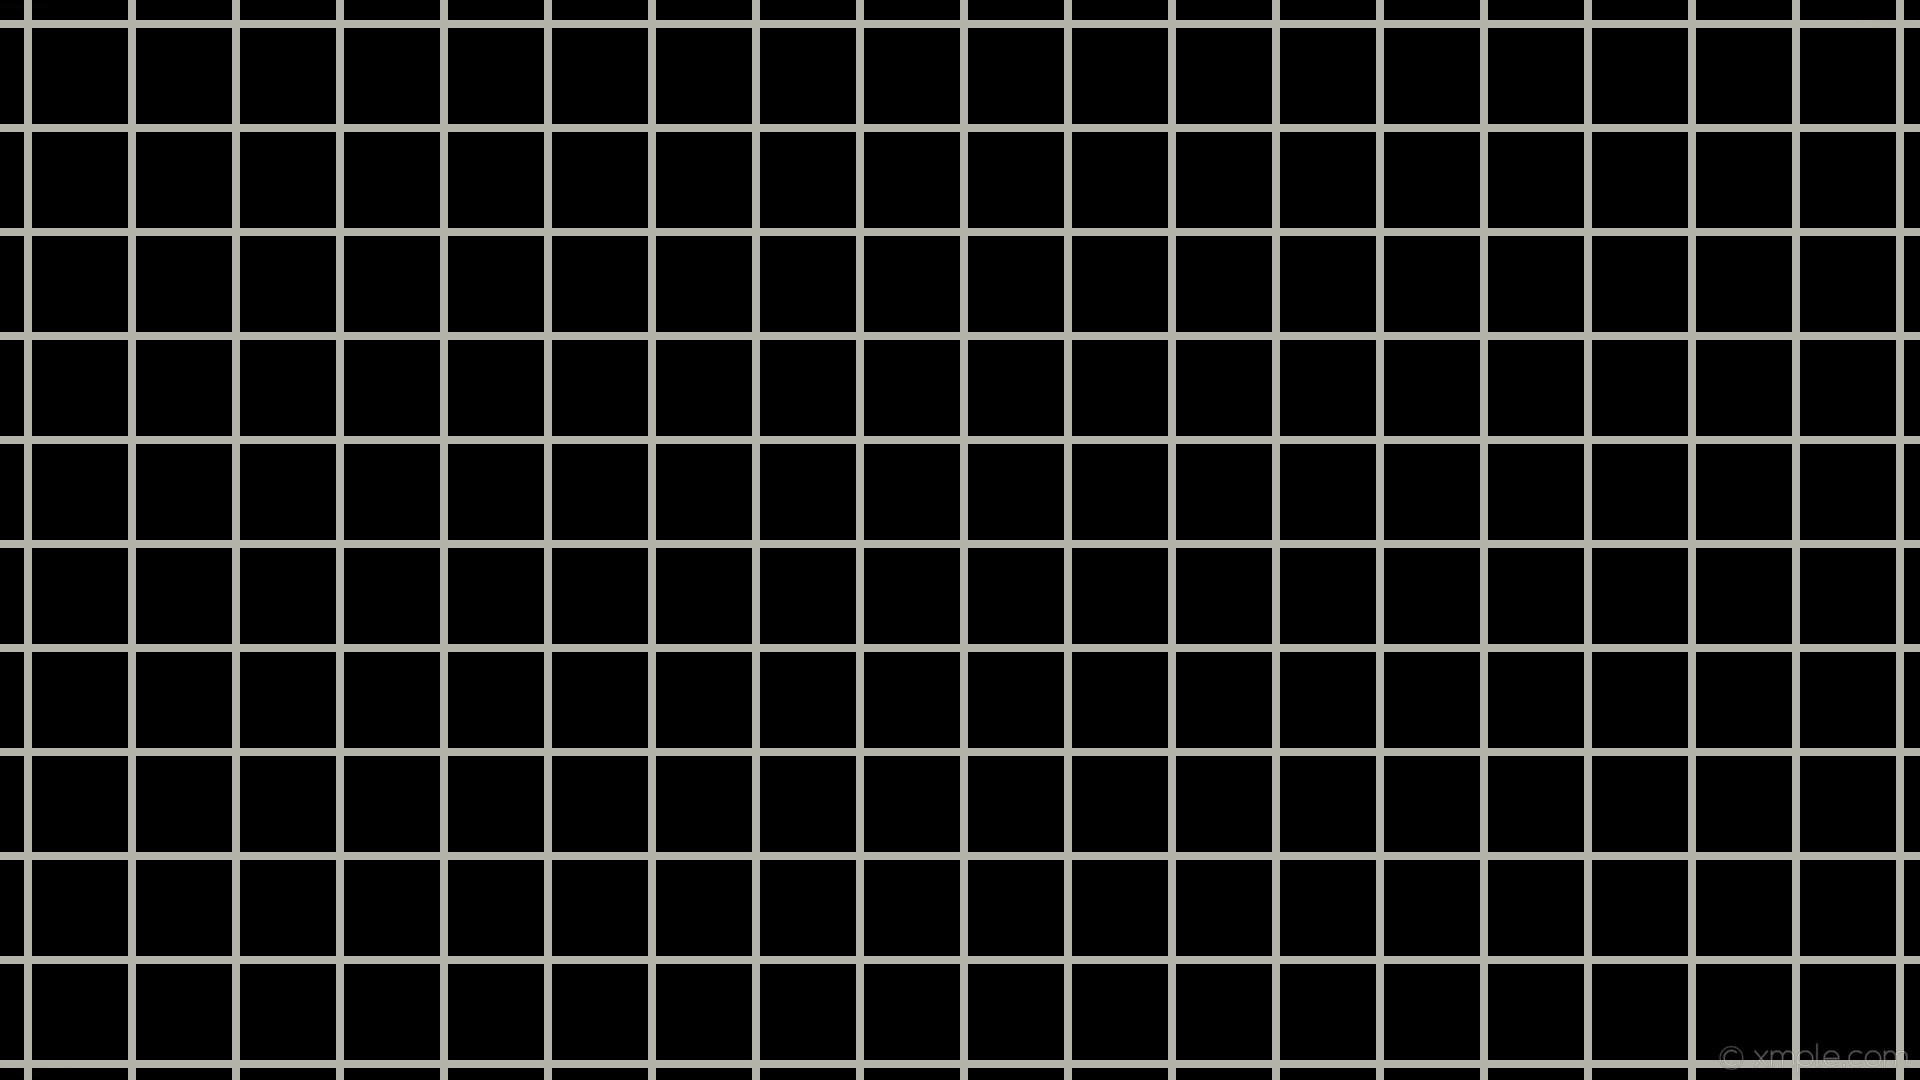 1920x1080 wallpaper graph paper black white grid ivory #000000 #fffff0 0Â° 8px 104px